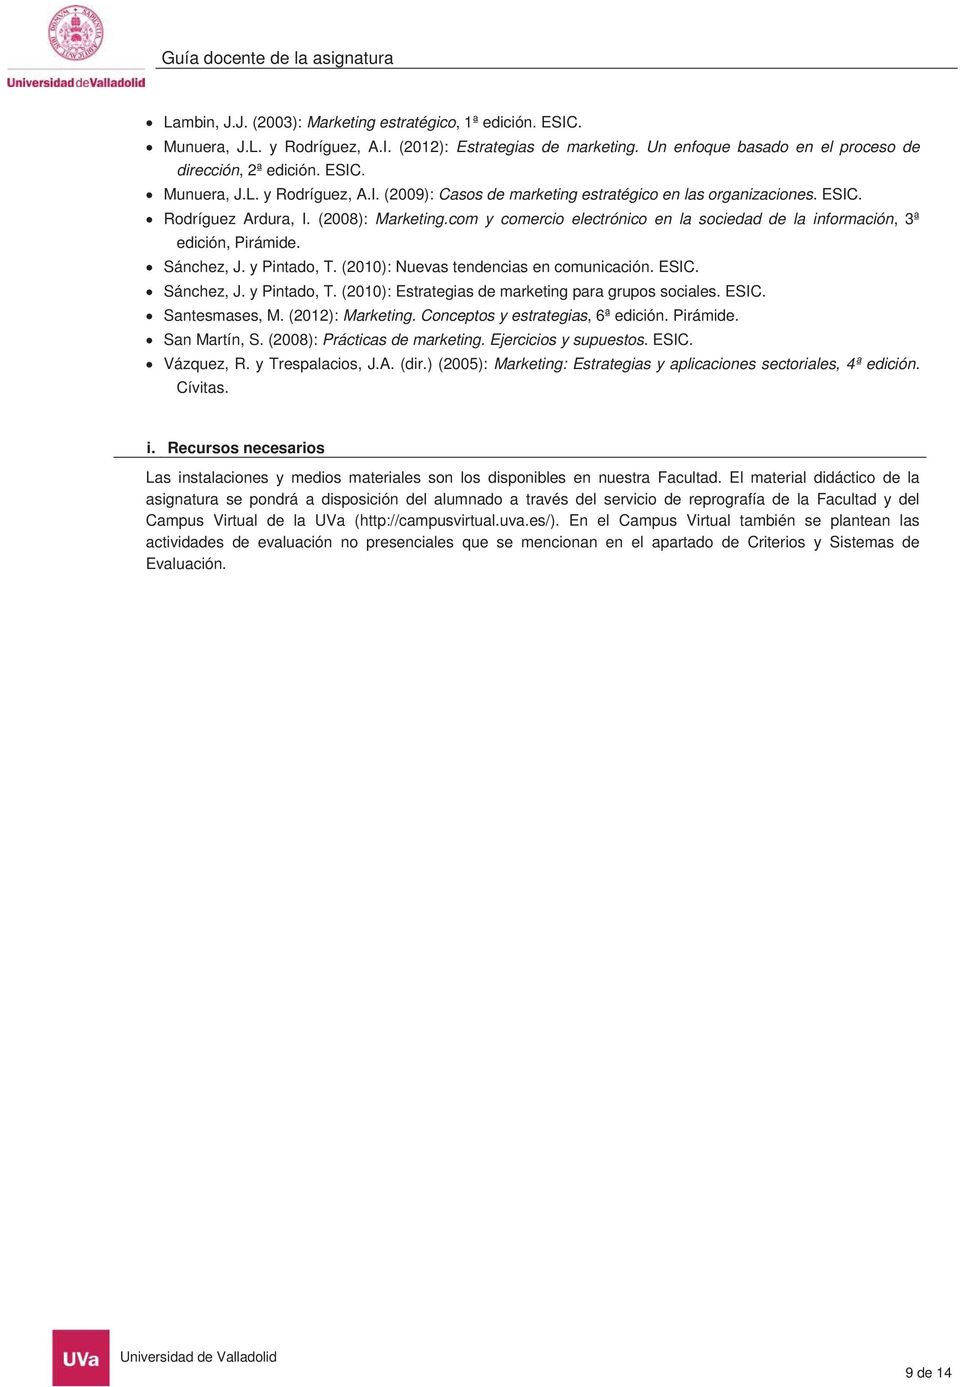 ESIC. Sánchez, J. y Pintado, T. (2010): Estrategias de marketing para grupos sociales. ESIC. Santesmases, M. (2012): Marketing. Conceptos y estrategias, 6ª edición. Pirámide. San Martín, S.